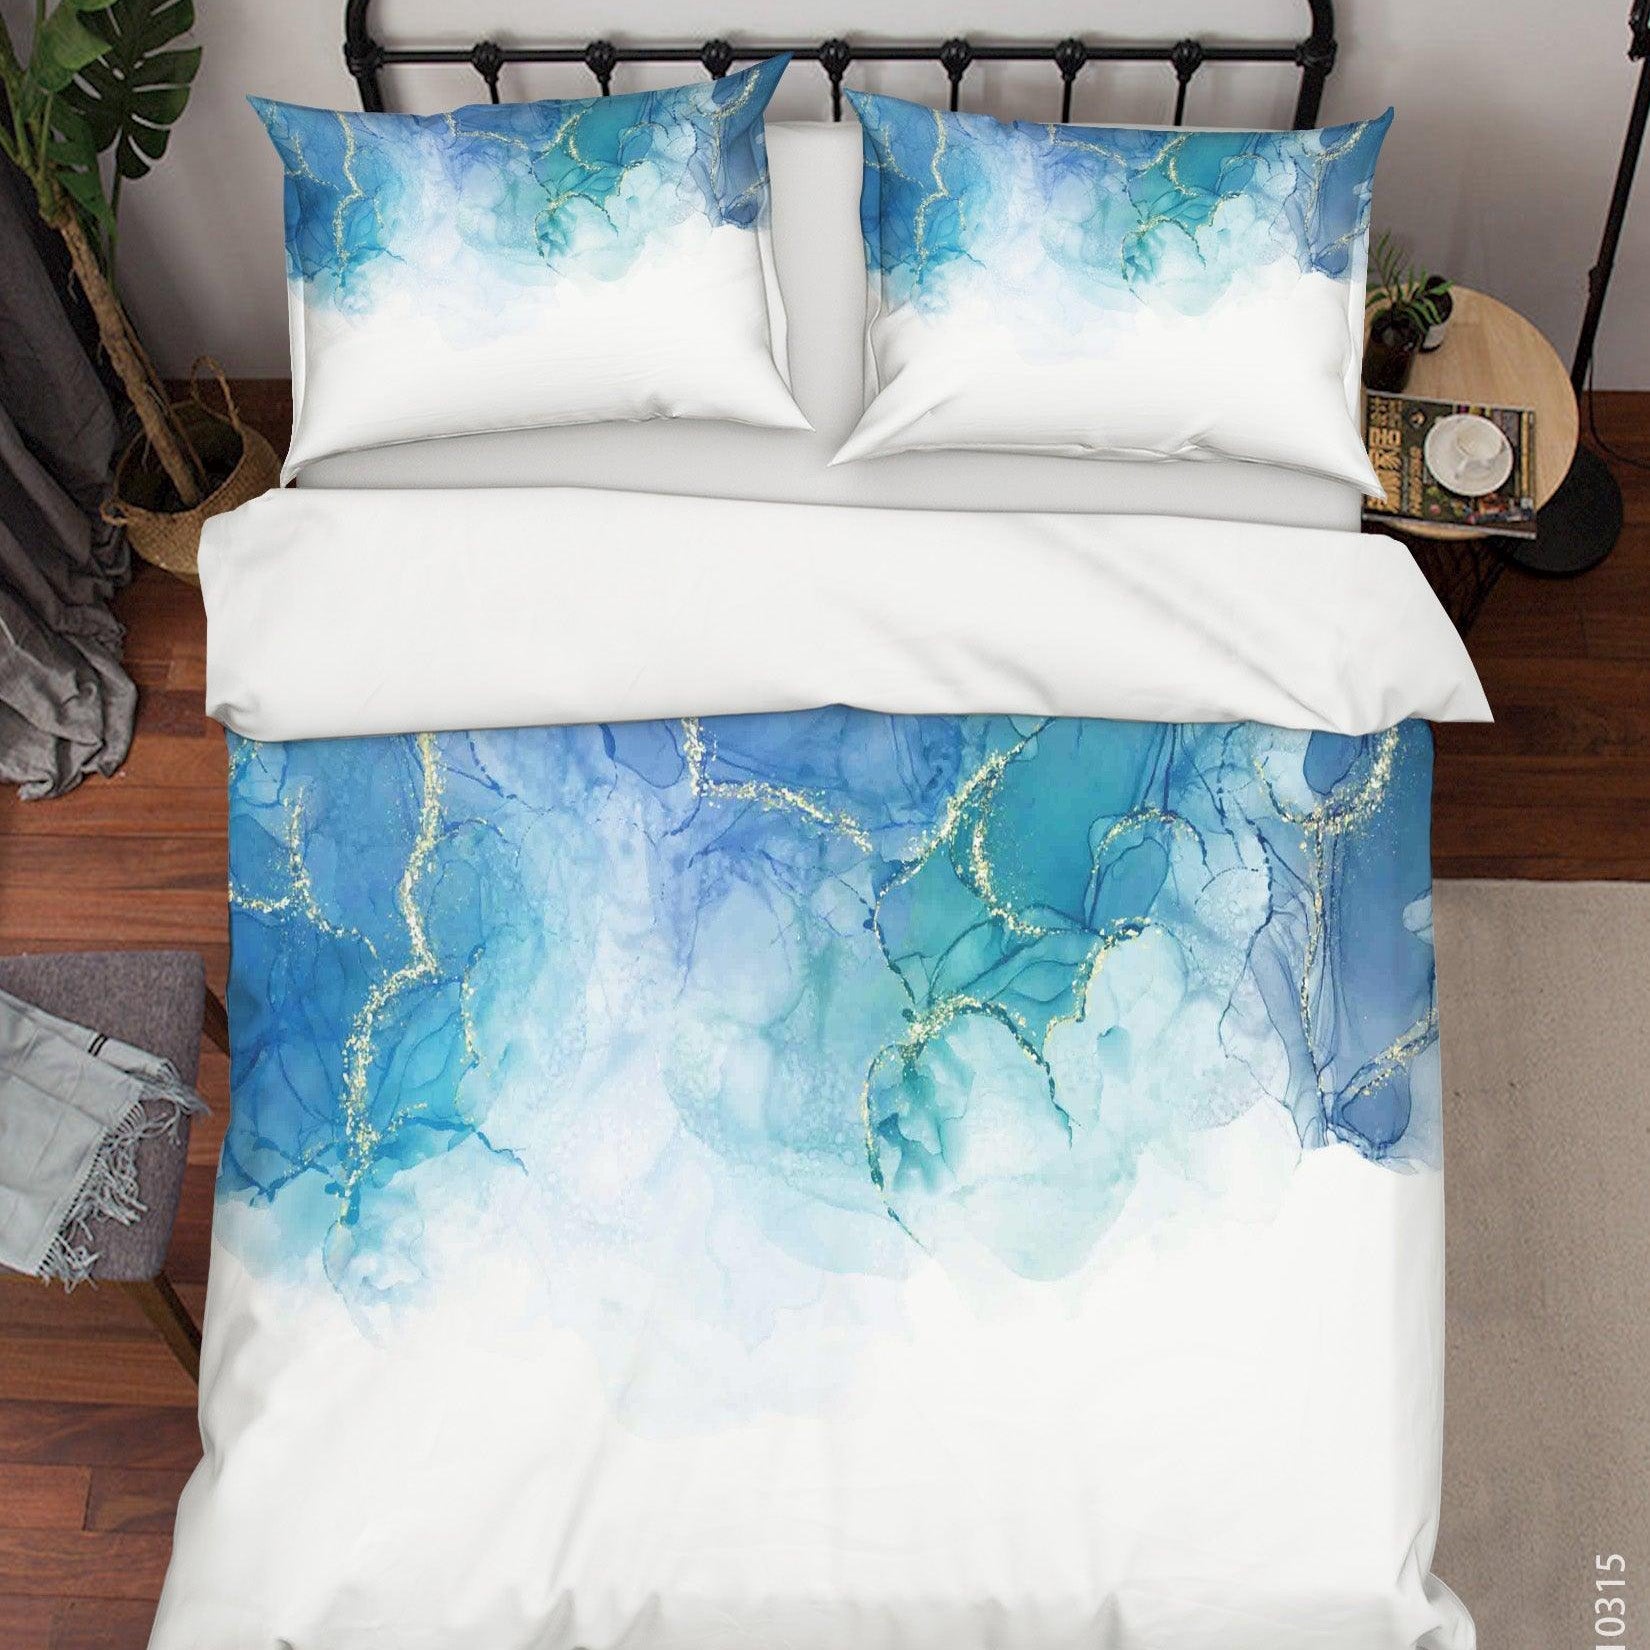 3D Watercolor Blue Marble Quilt Cover Set Bedding Set Duvet Cover Pillowcases 82- Jess Art Decoration